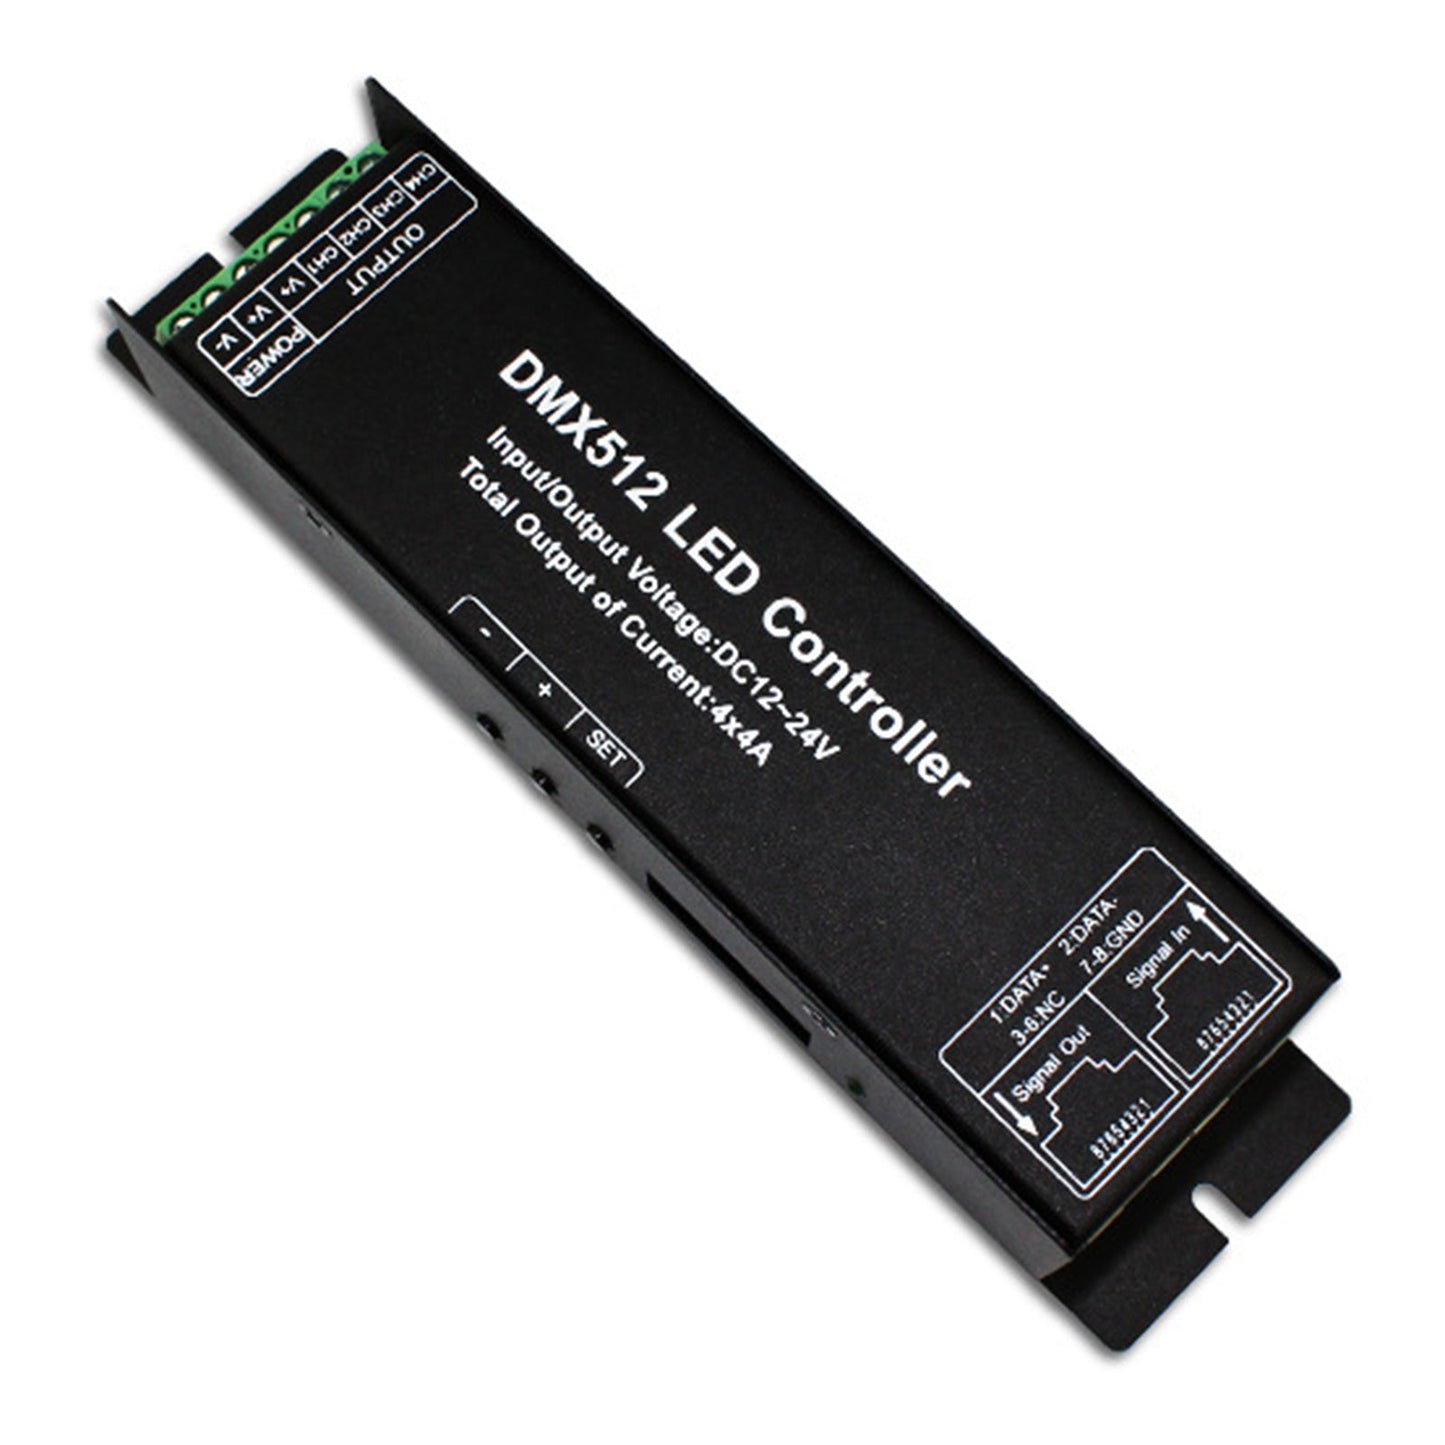 LED RGB DMX512 Decoder Controller DC12-24V 4x4A 16A 4 Channel Digital PWM Dimmer